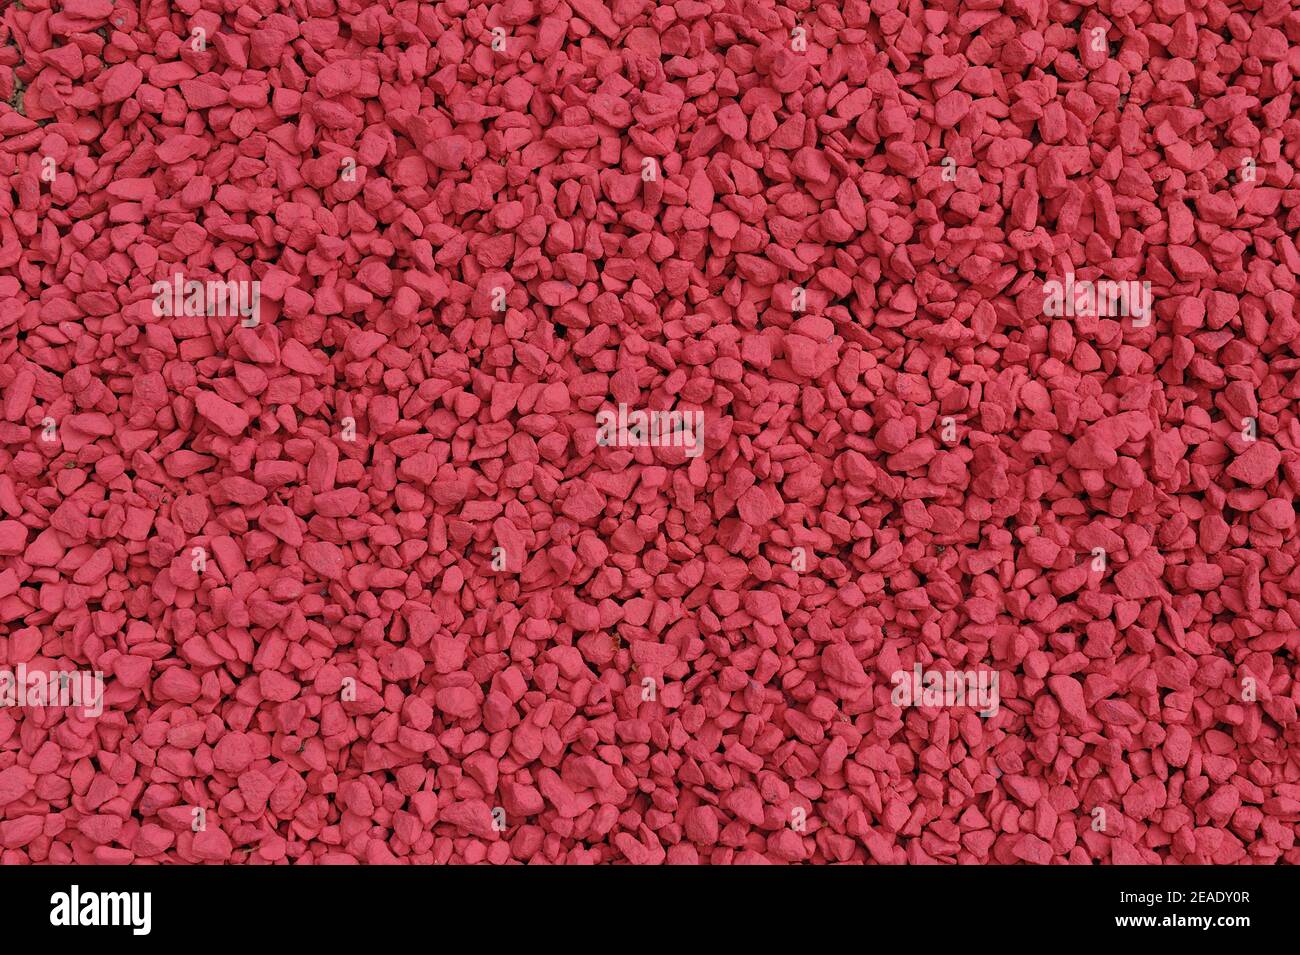 Vollrahmen Textur von dekorativen roten Schutt für Gartendekoration Stockfoto